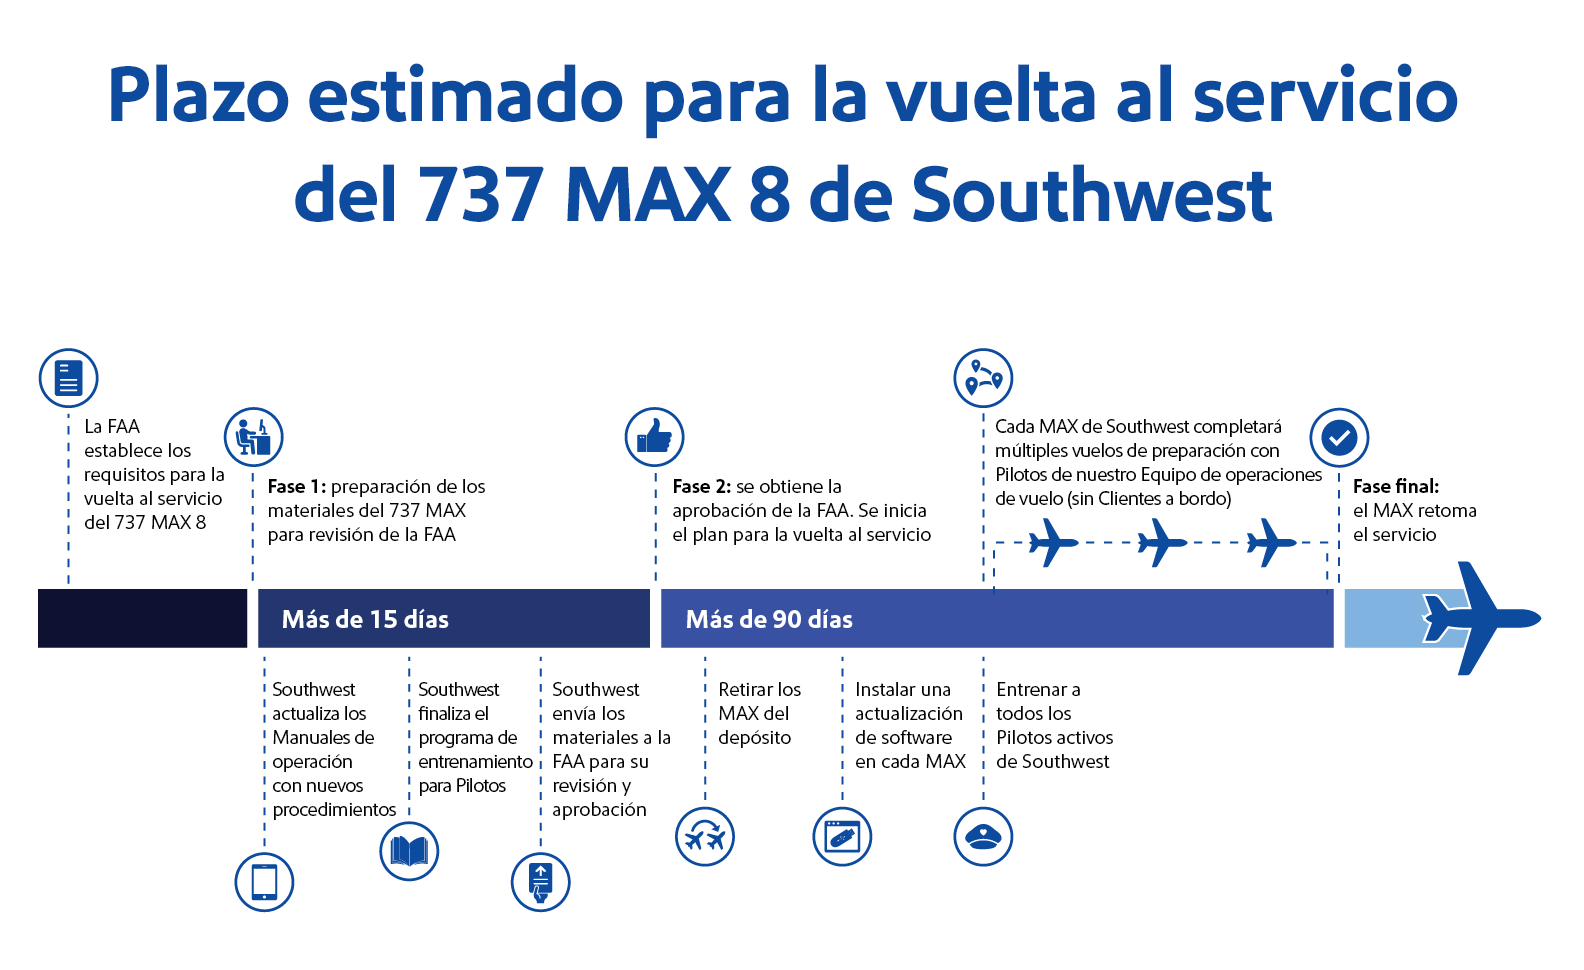 Plazo estimado de la vuelta al servicio del 737 MAX 8 de Southwest Airlines